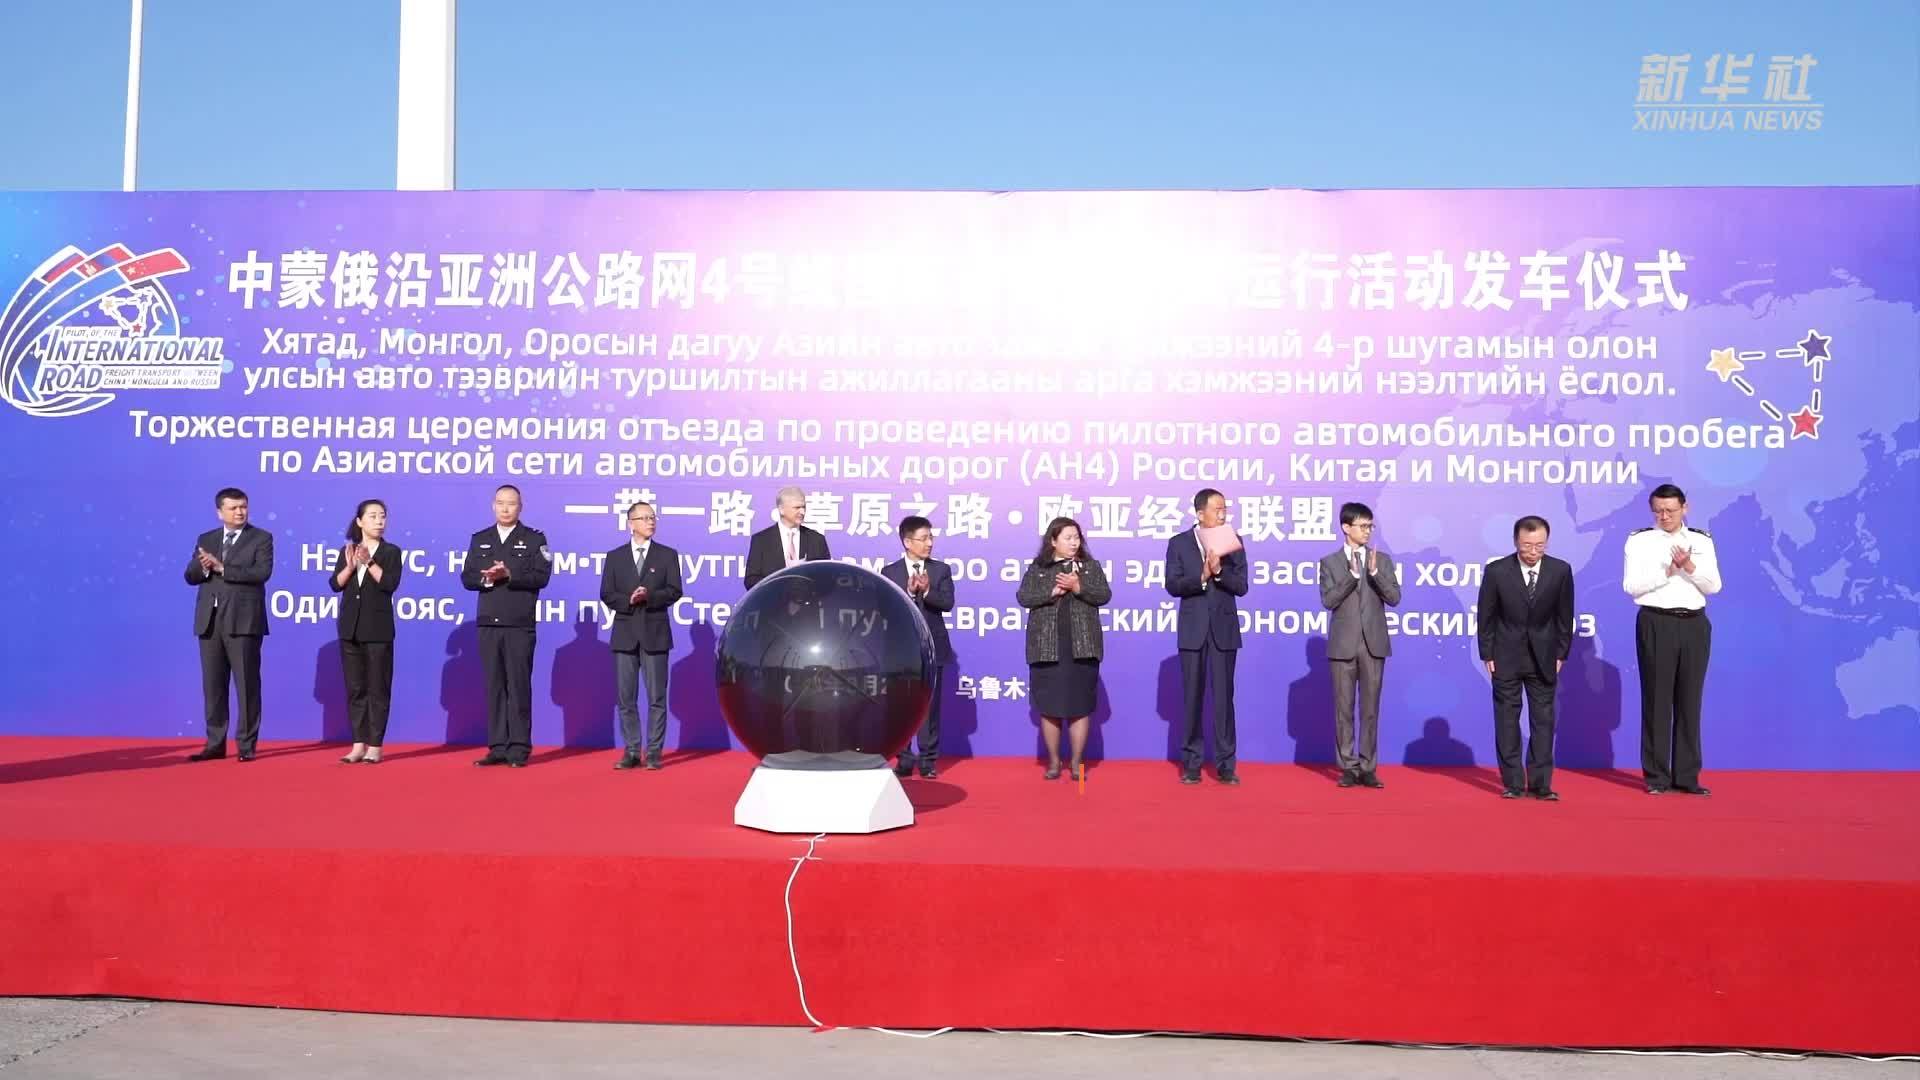 中蒙俄联合试运行第二条国际道路运输线路